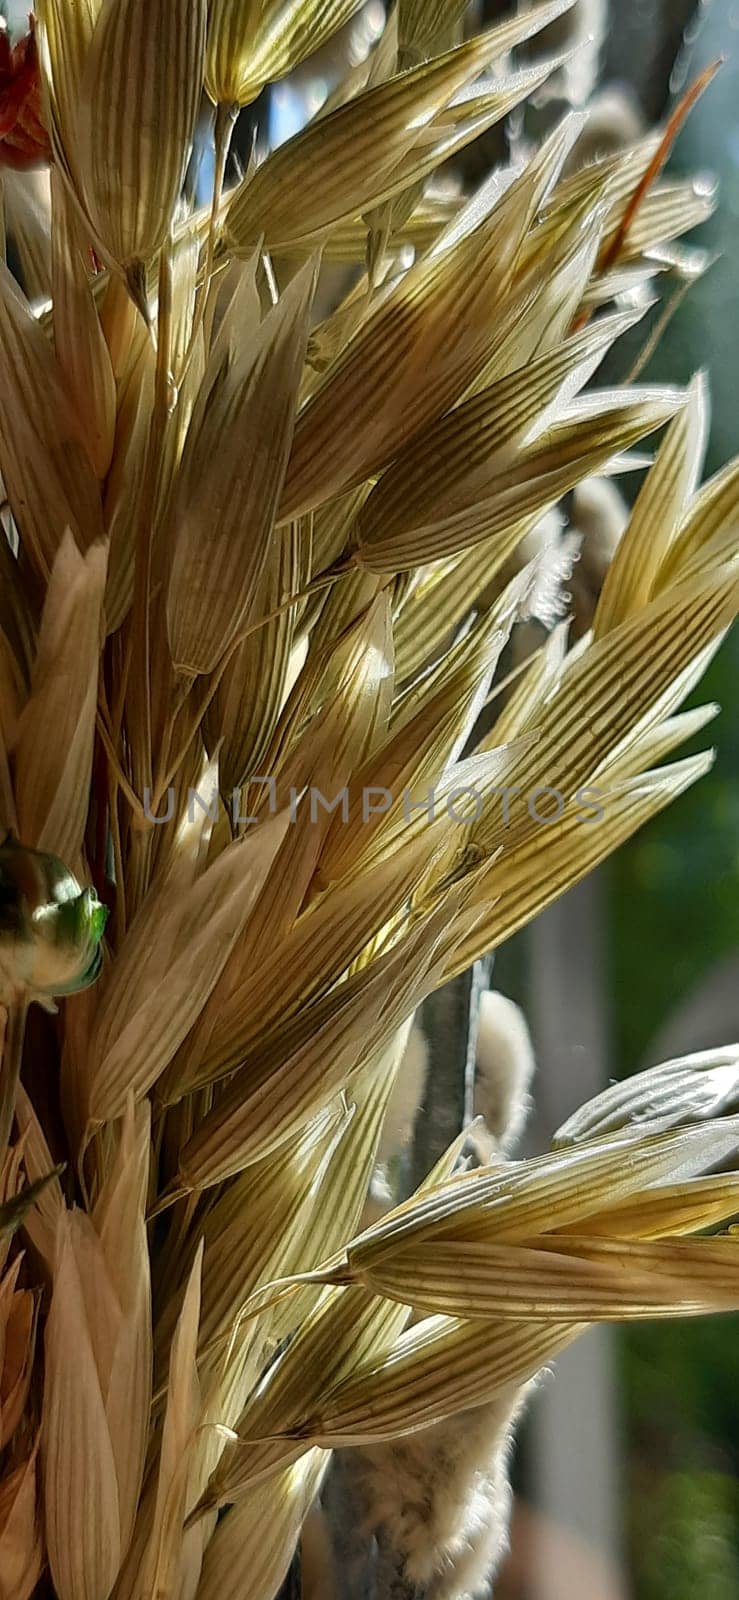 Grain crop - Oats. by Inoxodec